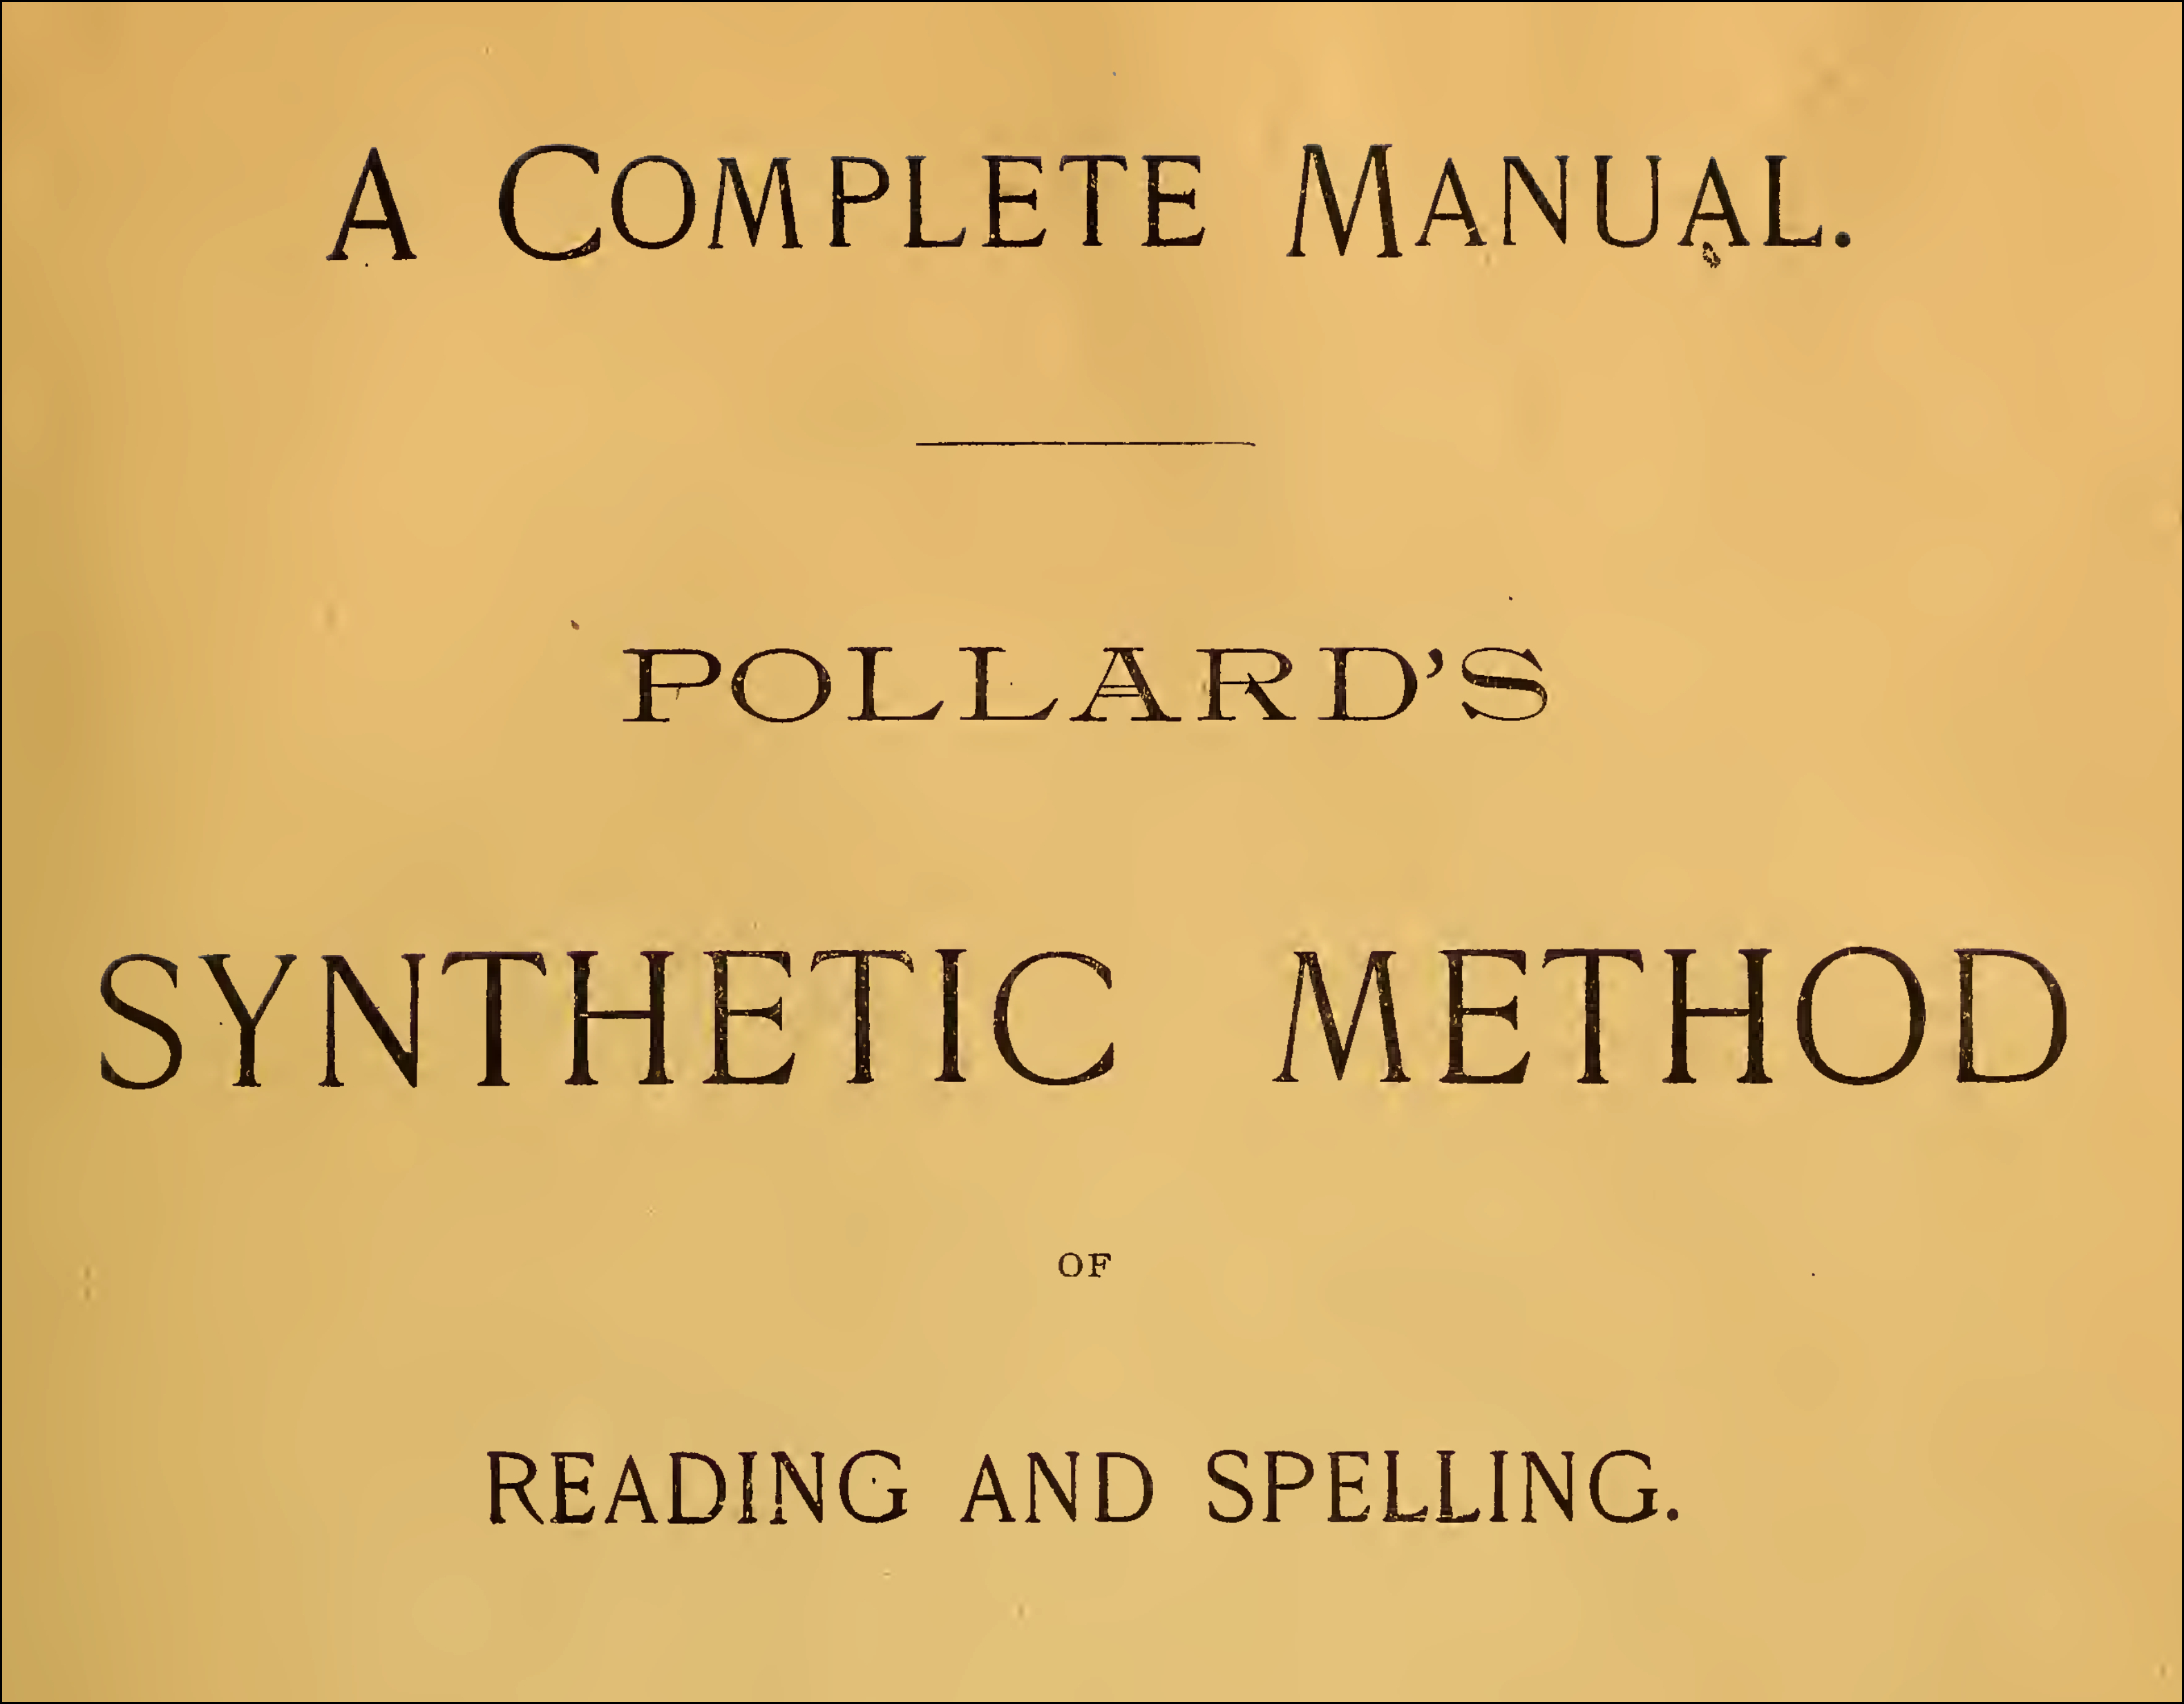 Pollards-reading-spelling